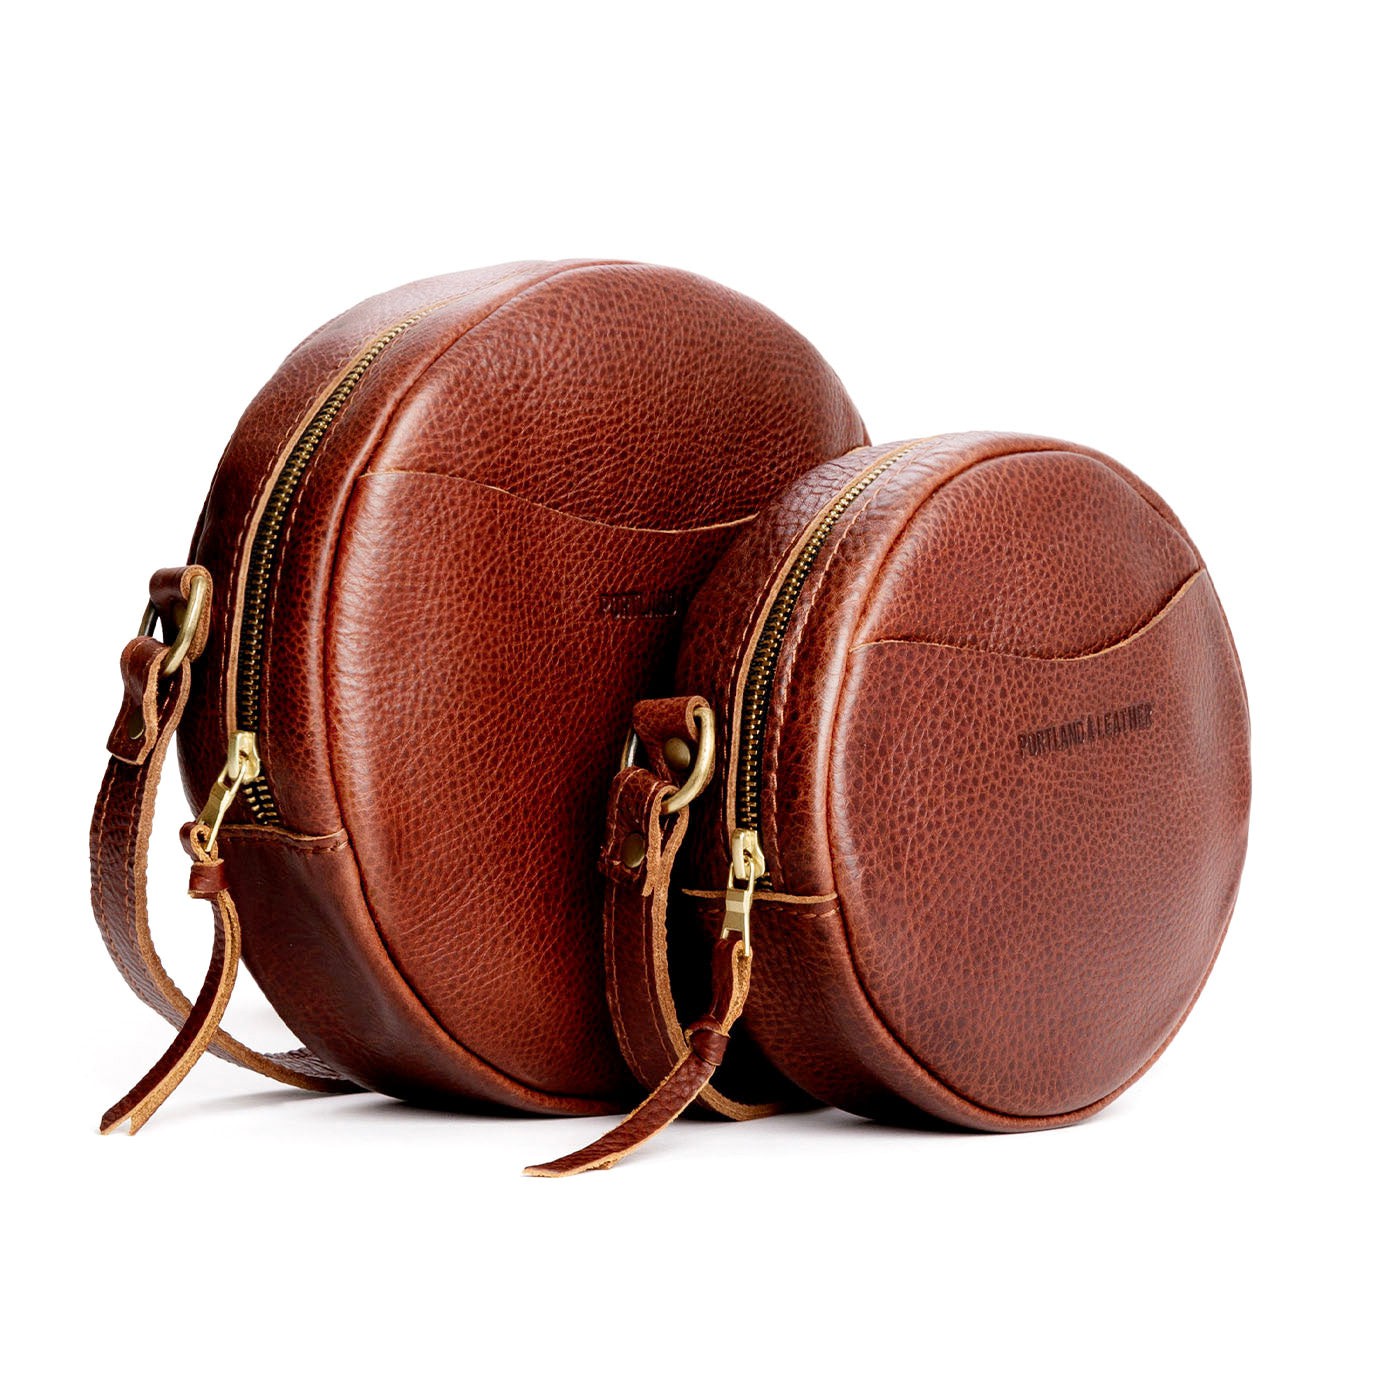 BOSTANTEN Leather Hobo Handbags Designer Purses for Women Shoulder Cro